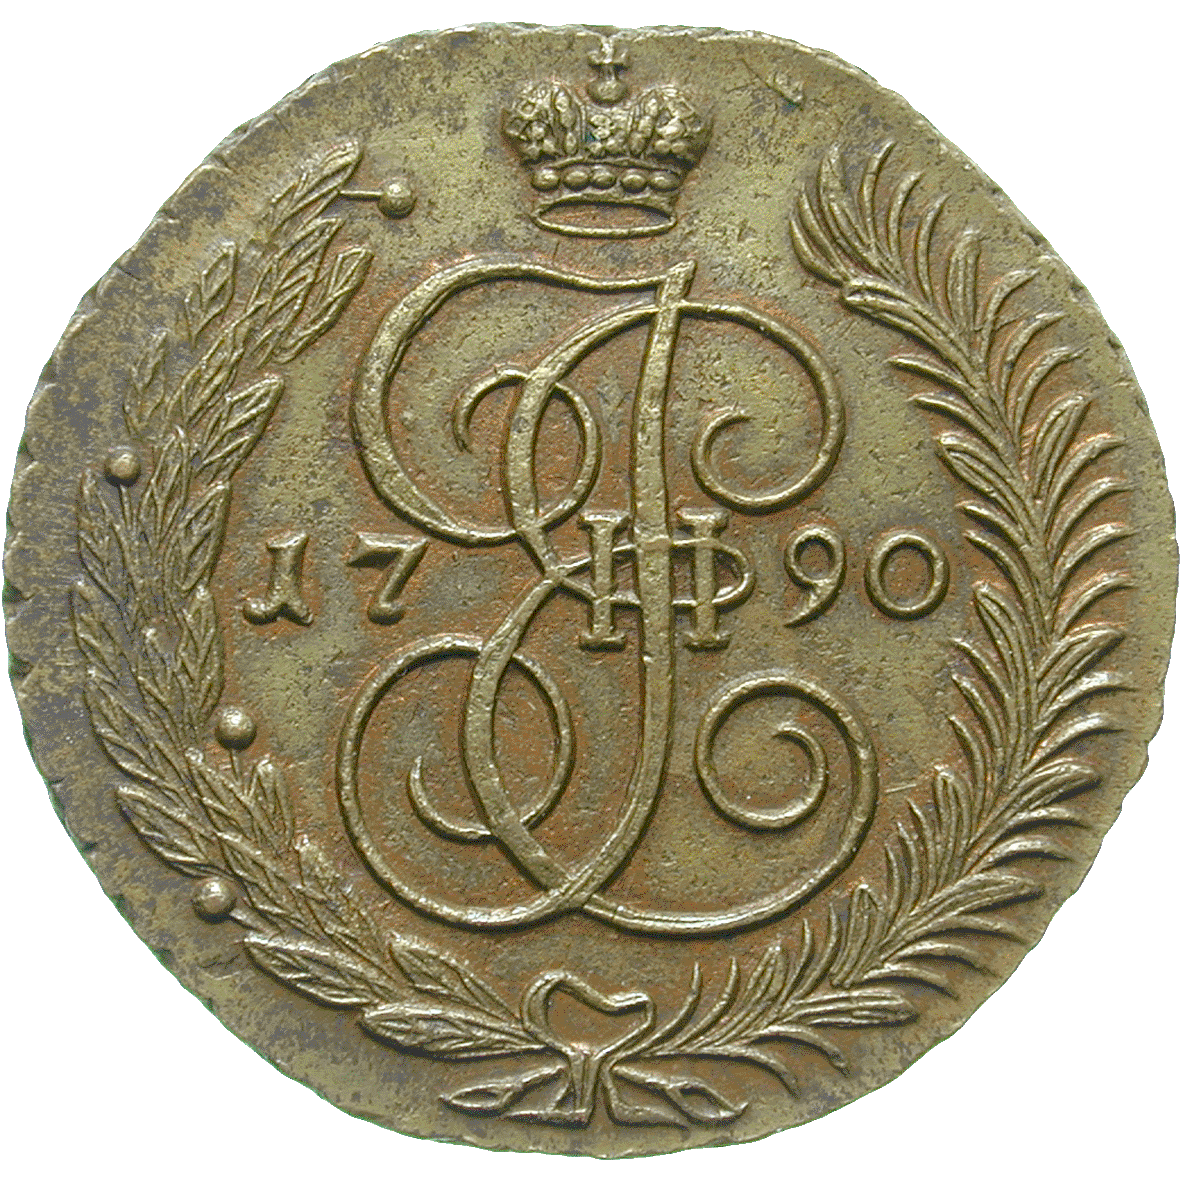 Zarenreich Russland, Katharina II. die Grosse, 5 Kopeken 1790 (obverse)